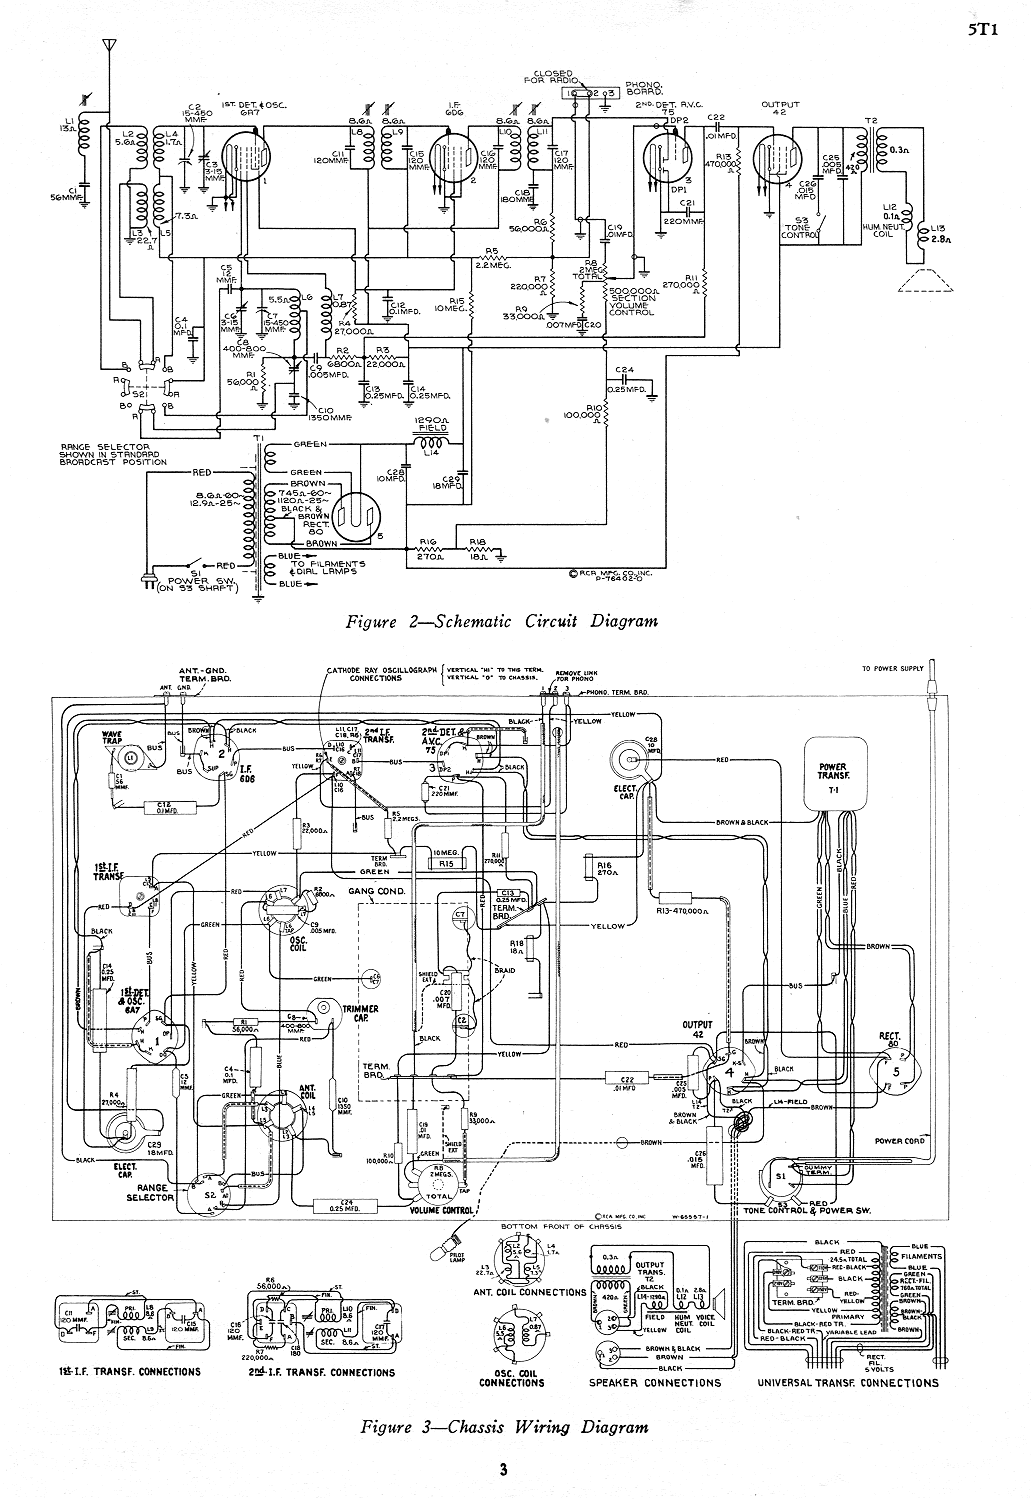 1968 Rca CTC28E CTC28F Manual de servicio de televisión diagrama esquemático photofact Fix 